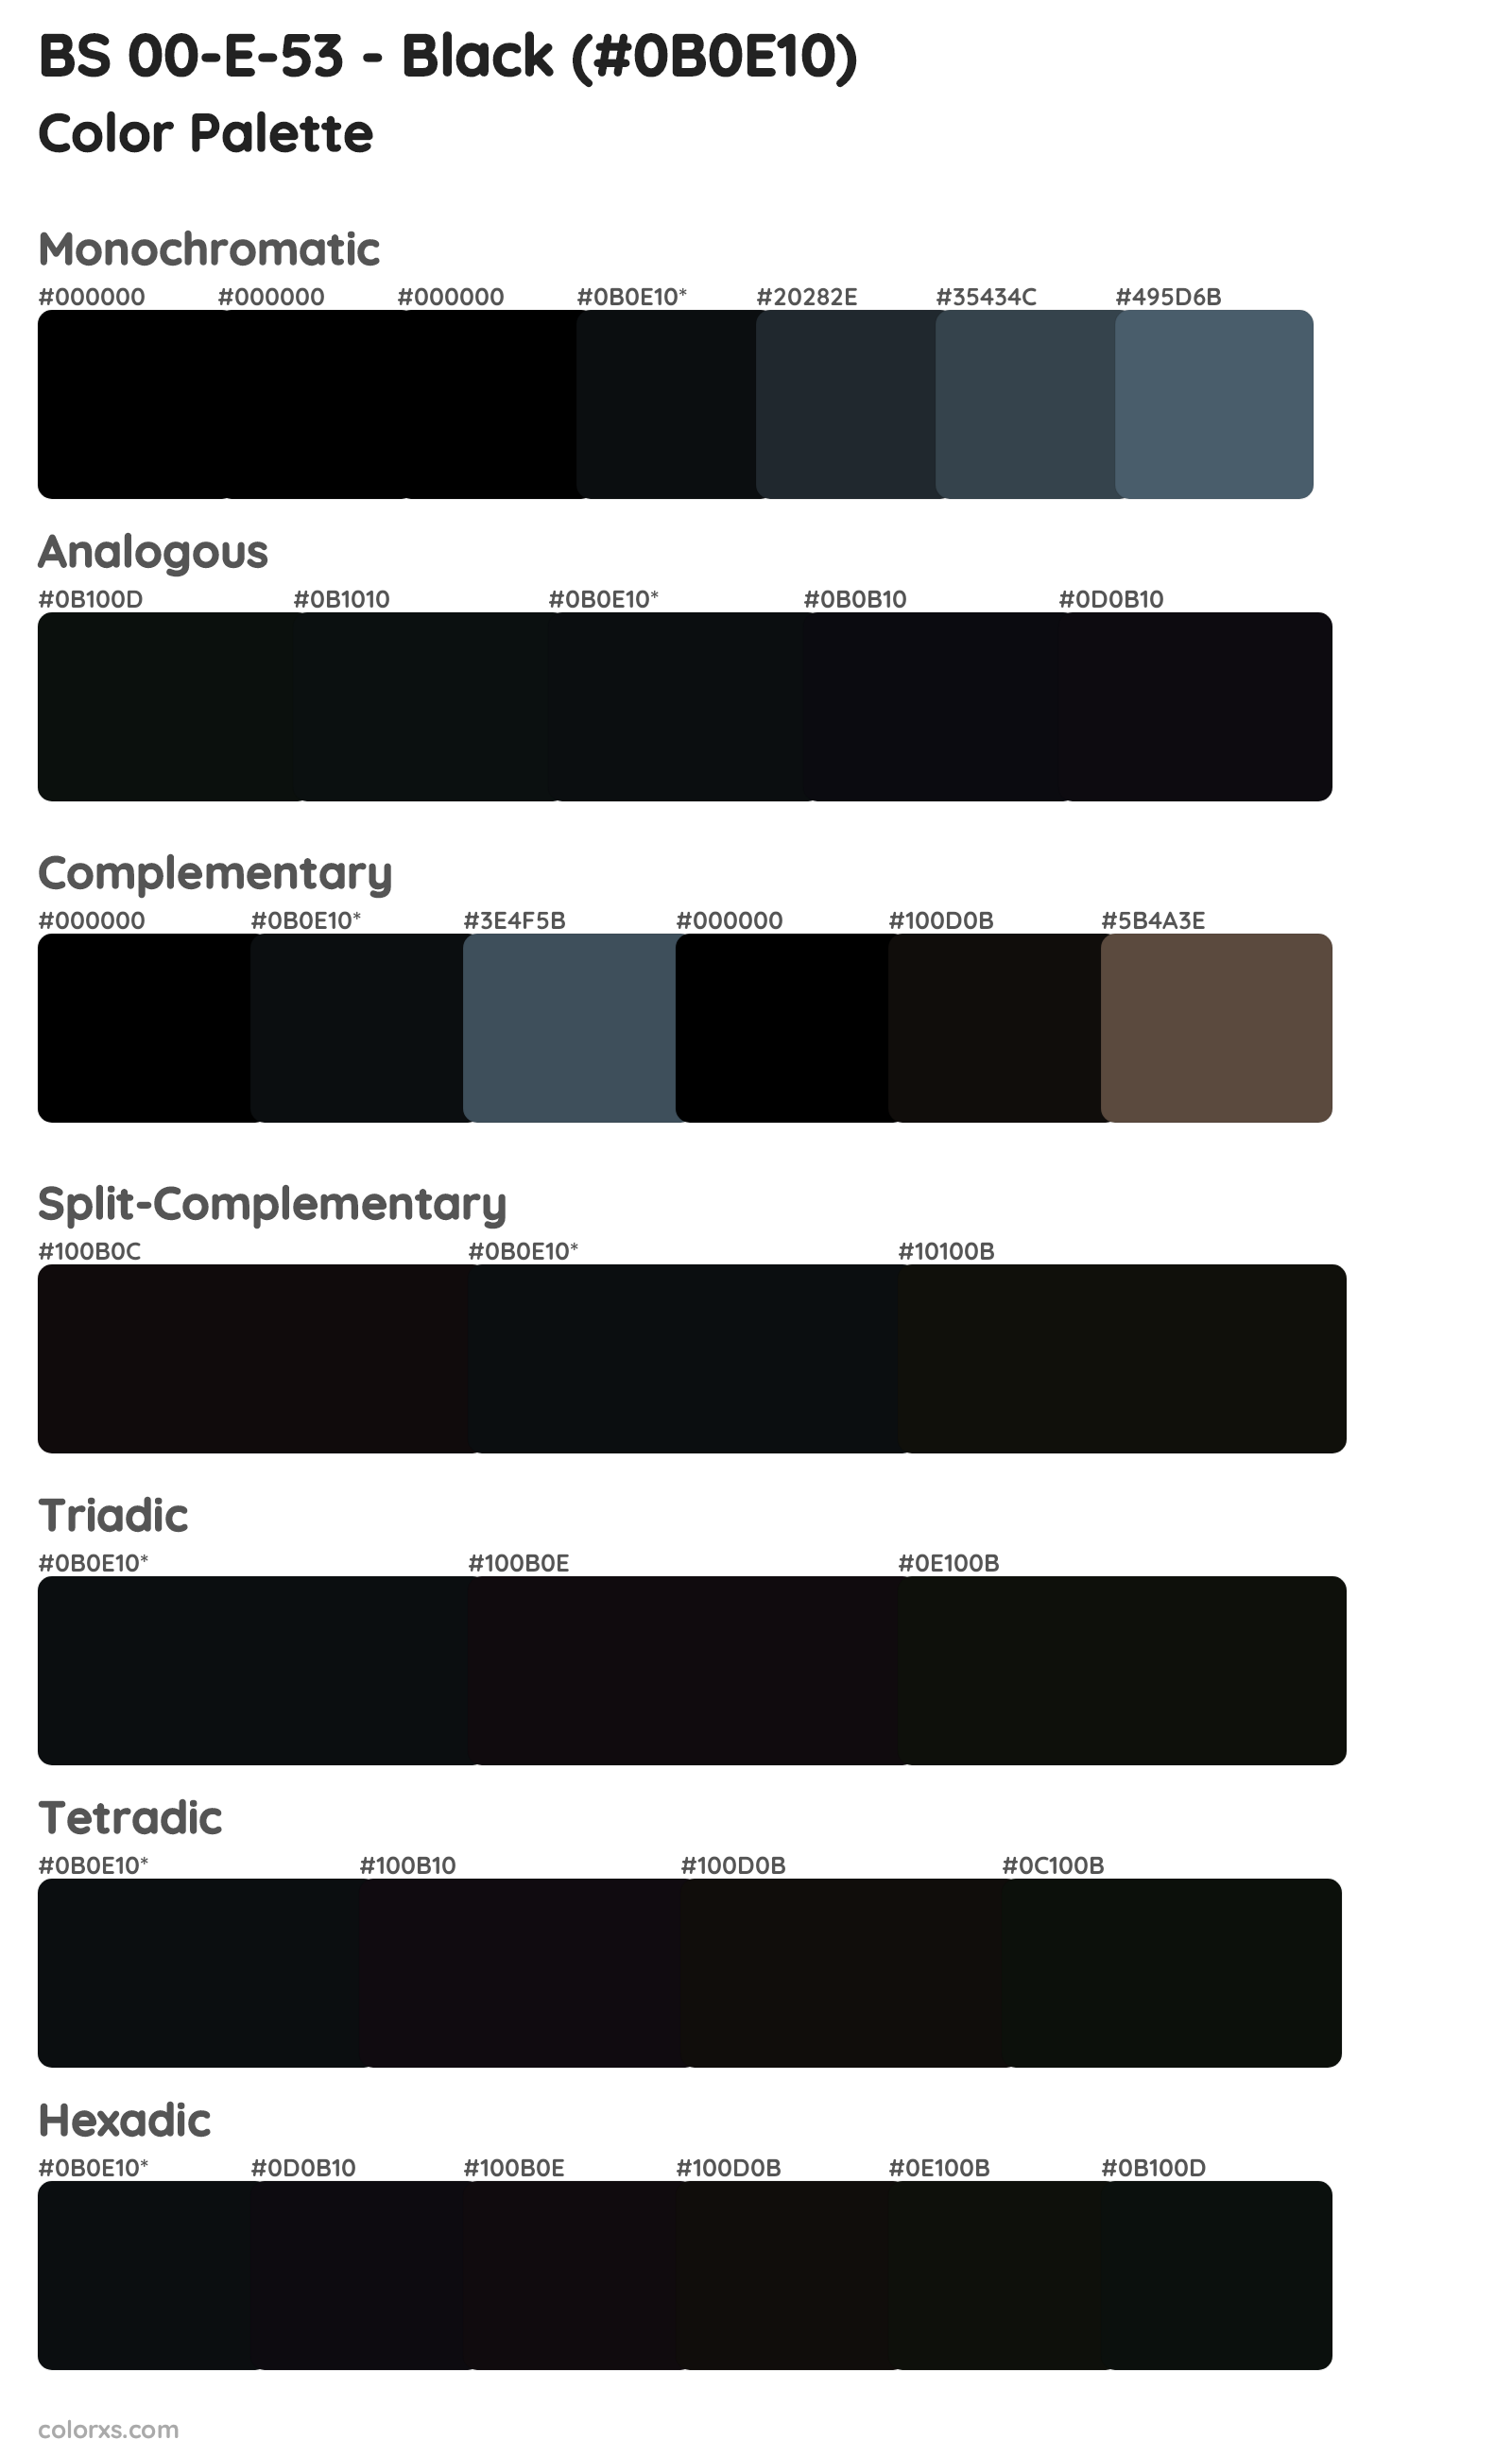 BS 00-E-53 - Black Color Scheme Palettes